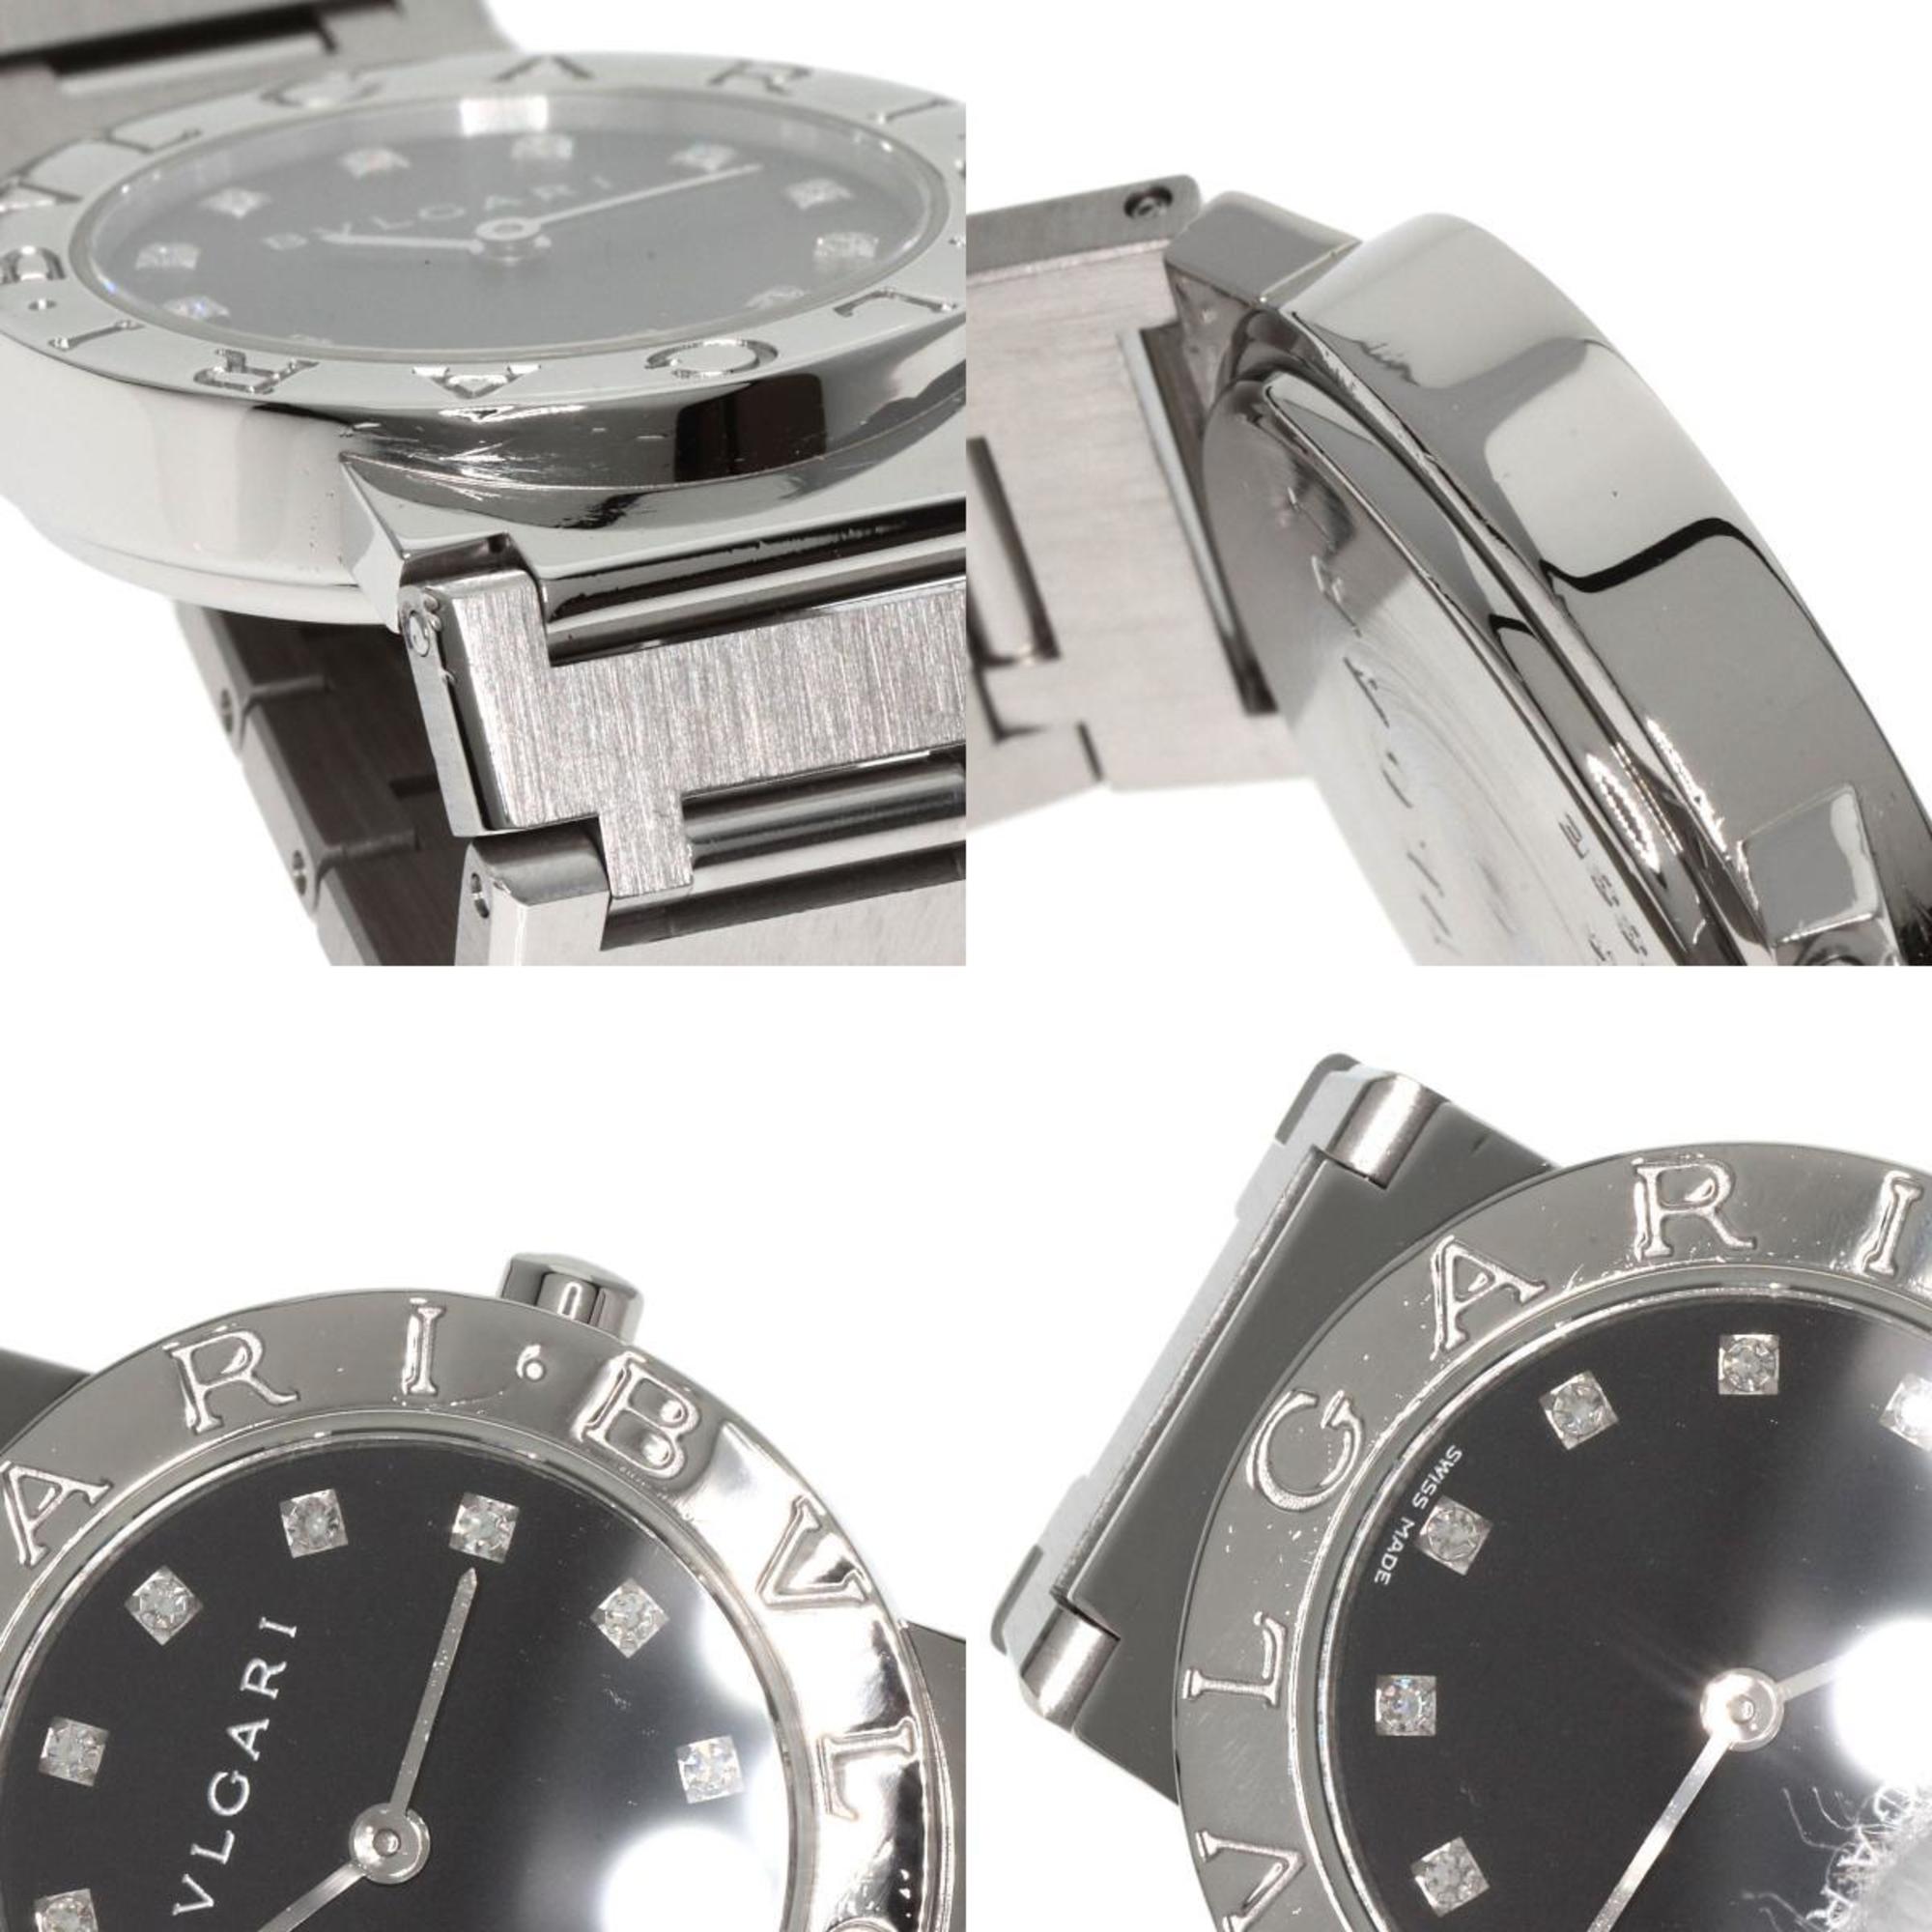 Bvlgari BB26SS/12 12P Diamond Watch Stainless Steel/SS Ladies BVLGARI